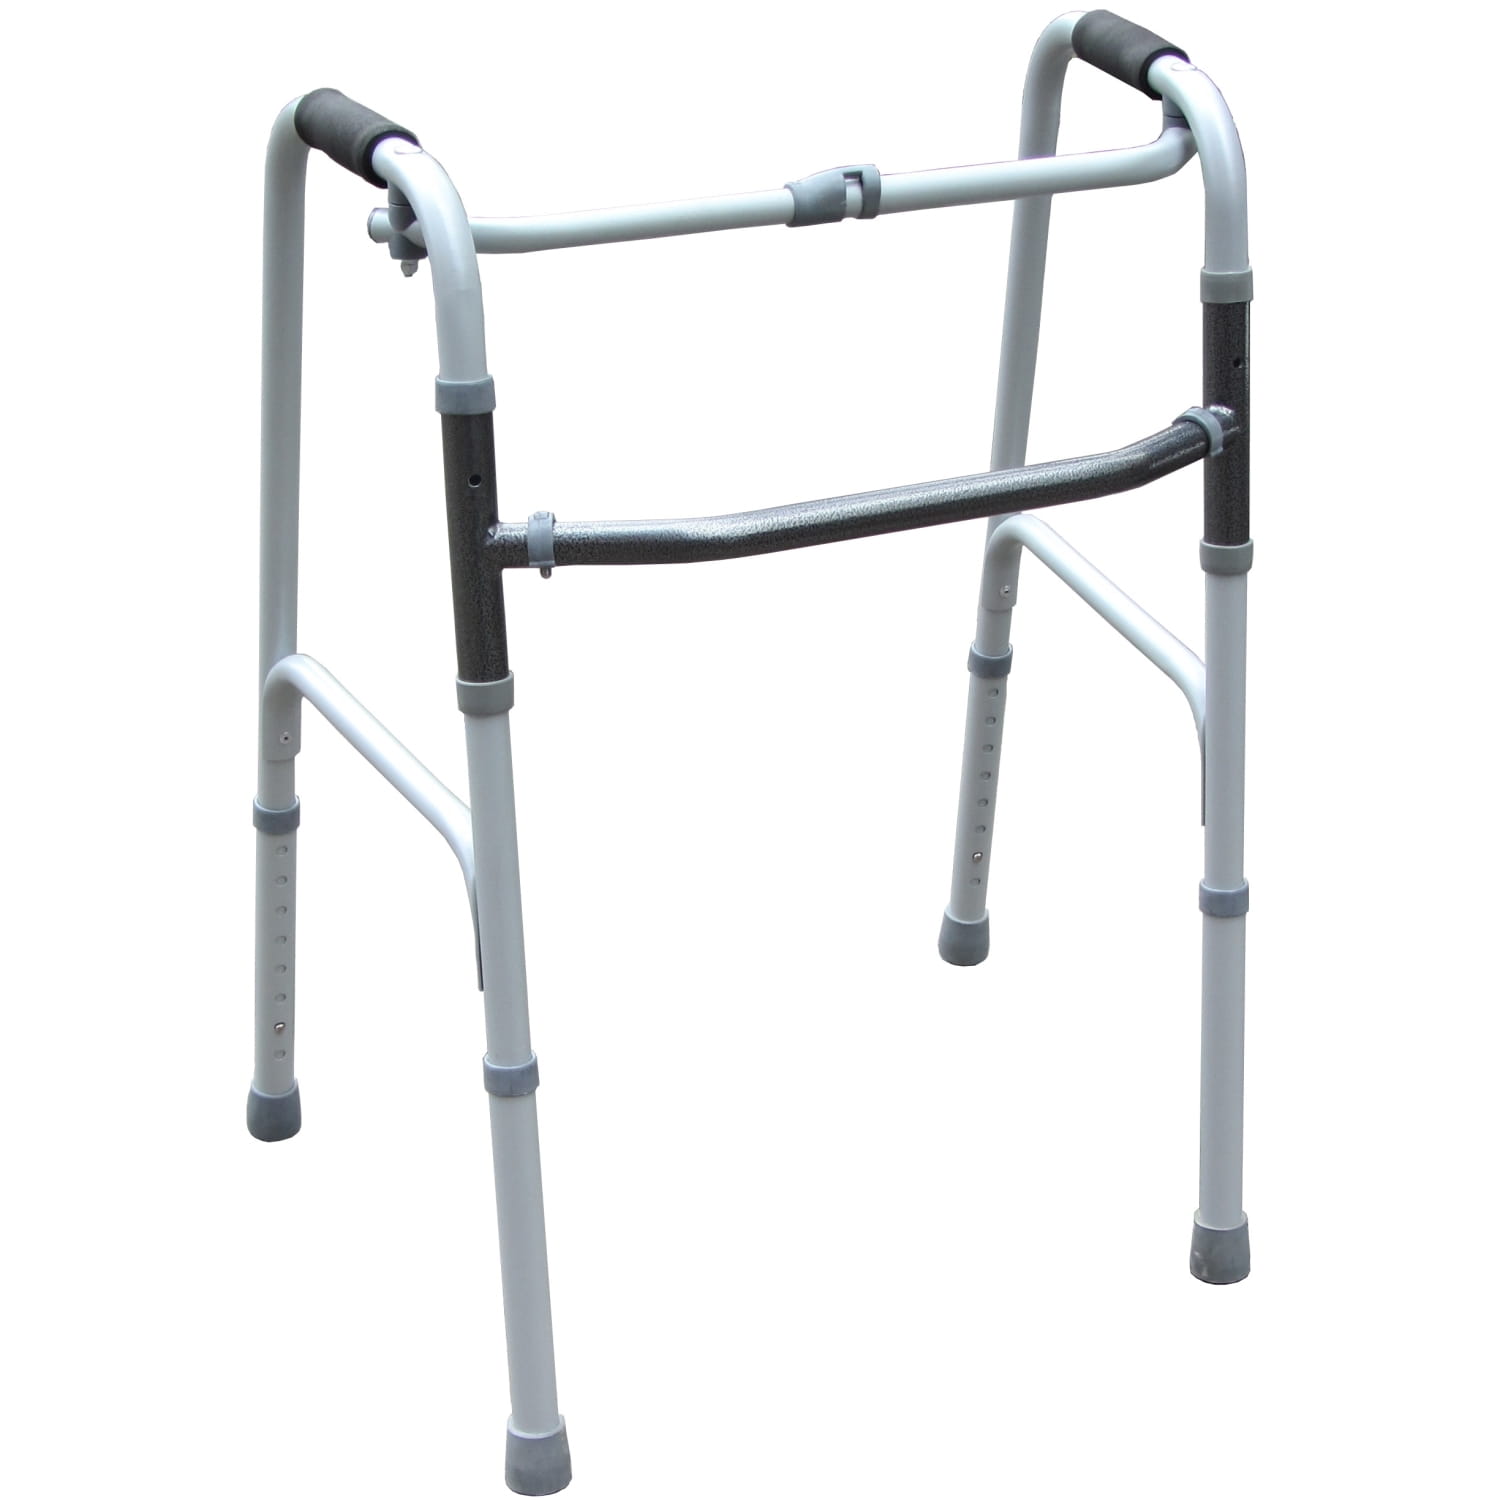 Ходунки для инвалидов шагающие. Ходунки шагающие складные регулируемые по высоте. Ходунки Ortonica xs305 (44). Ходунки шагающие для инвалидов. Ходунки для пожилых людей шагающие.